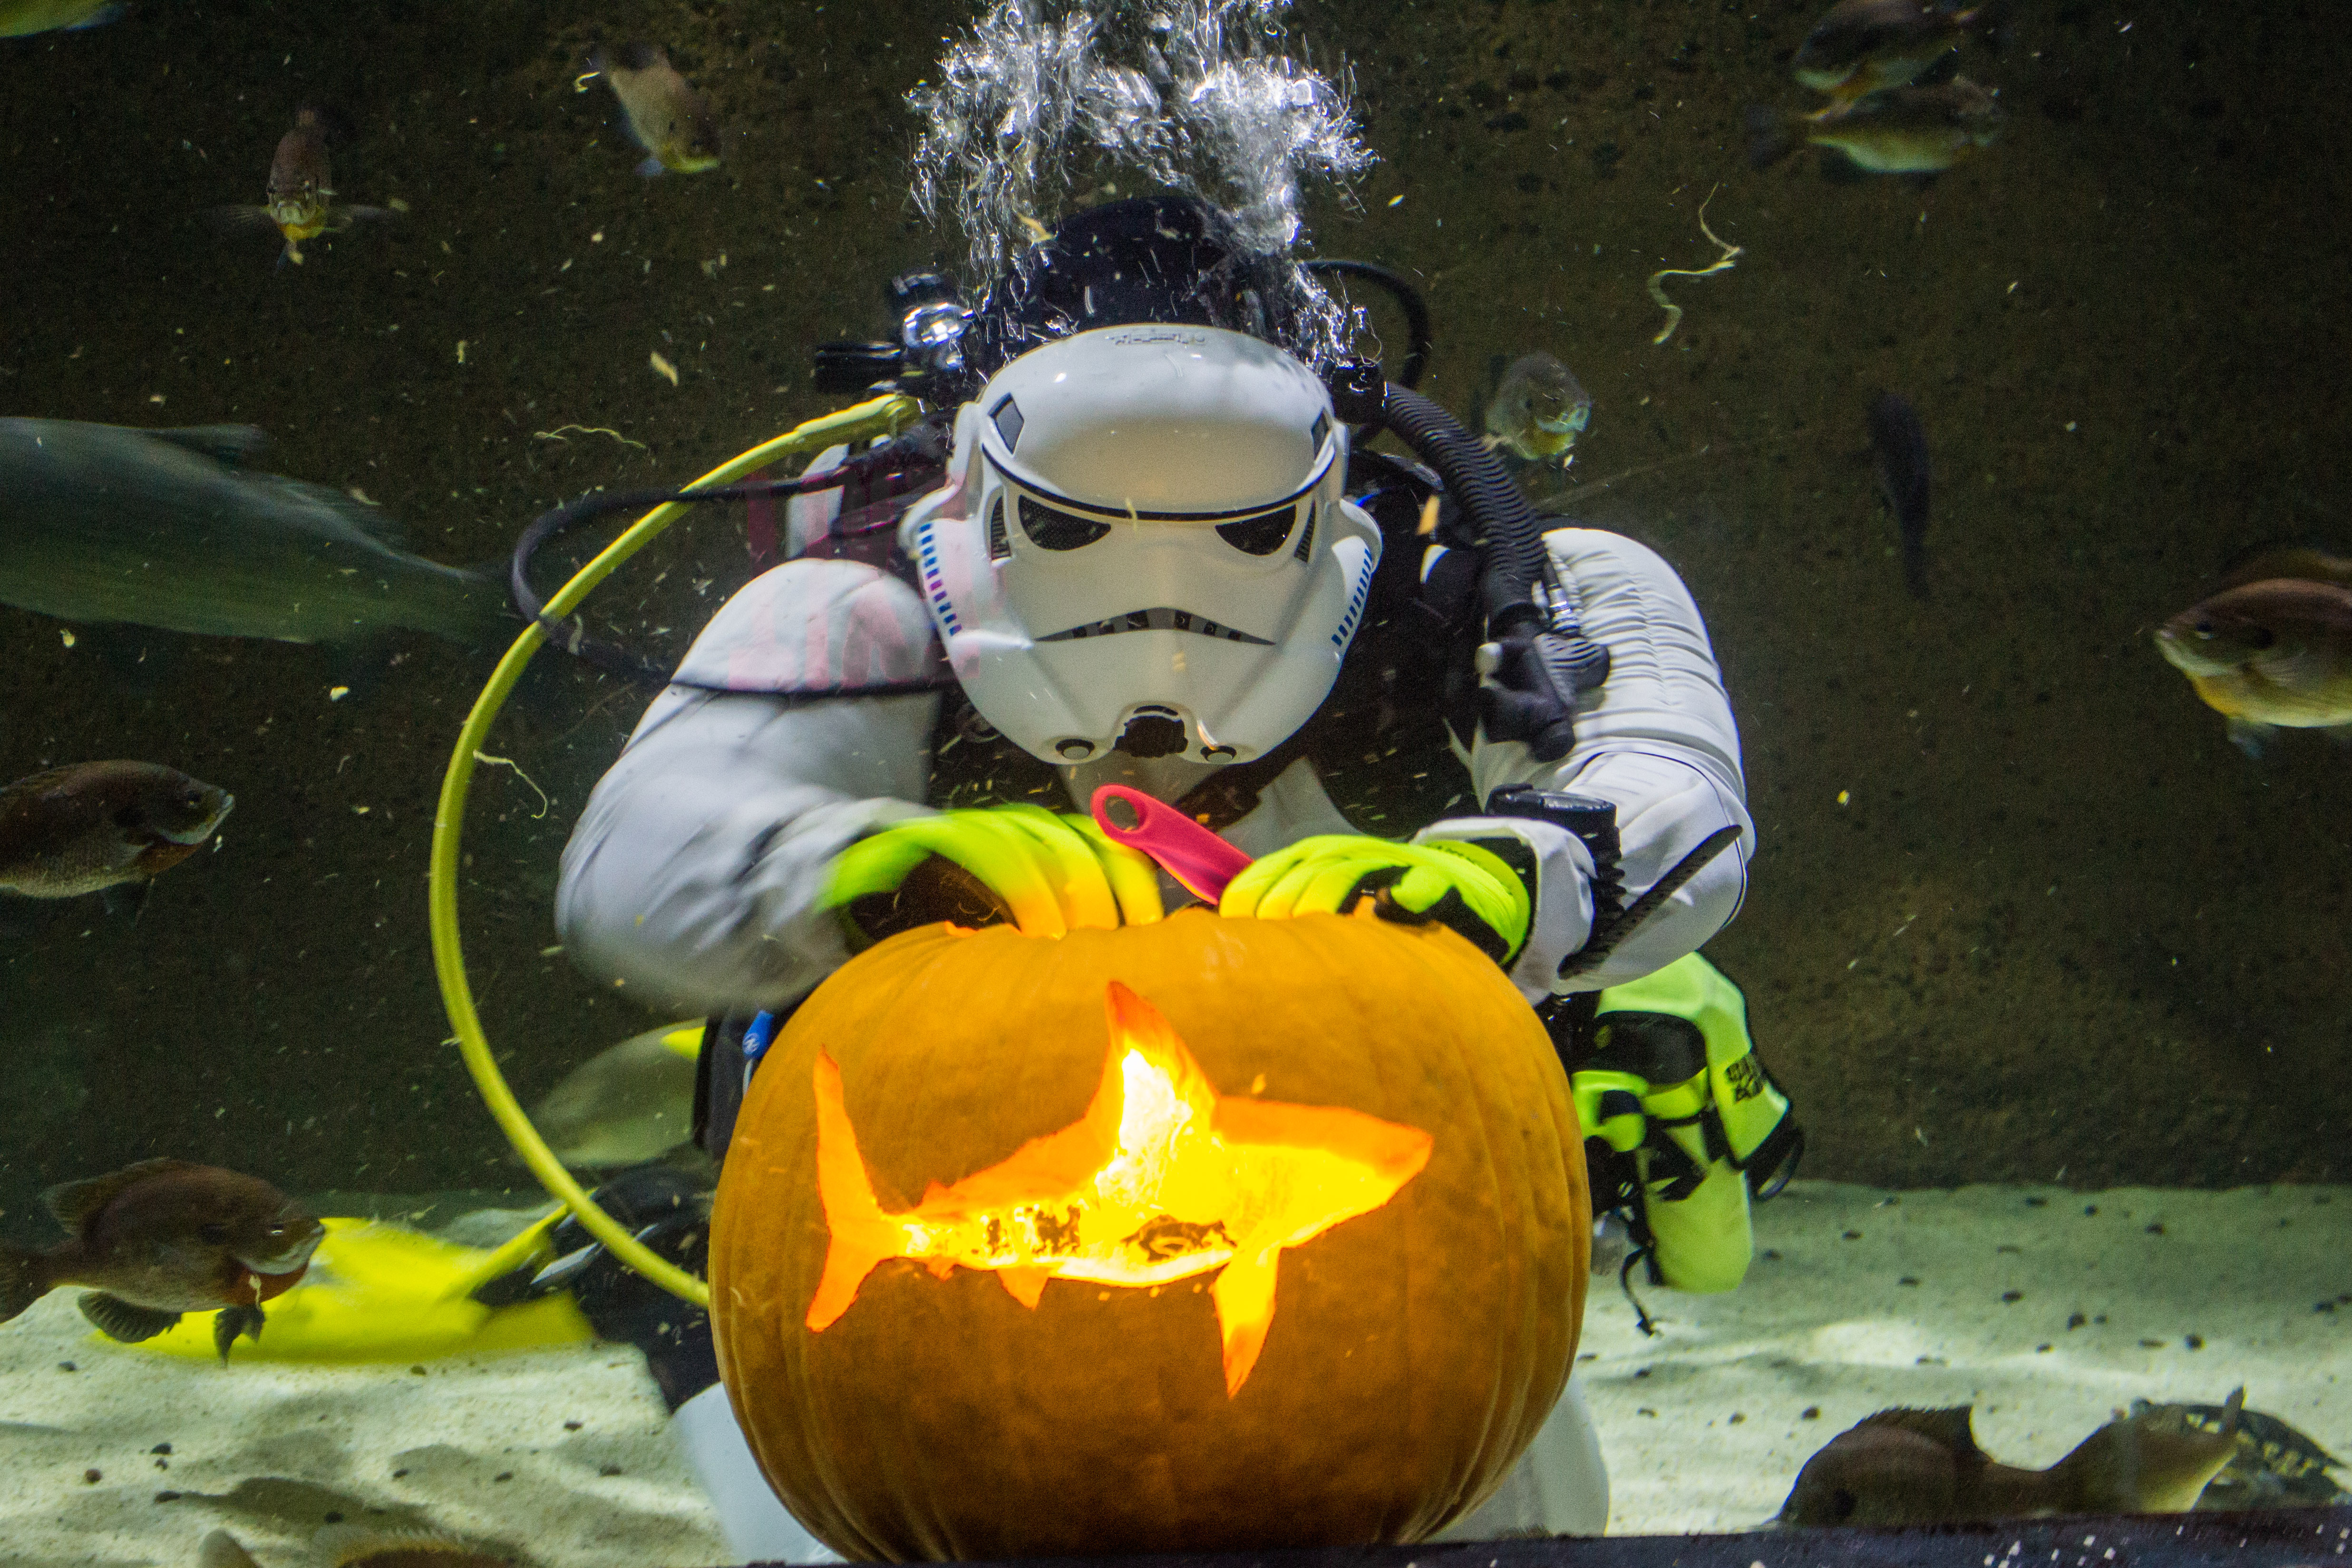 Underwater Pumpkin Carving At SEA LIFE At MOA